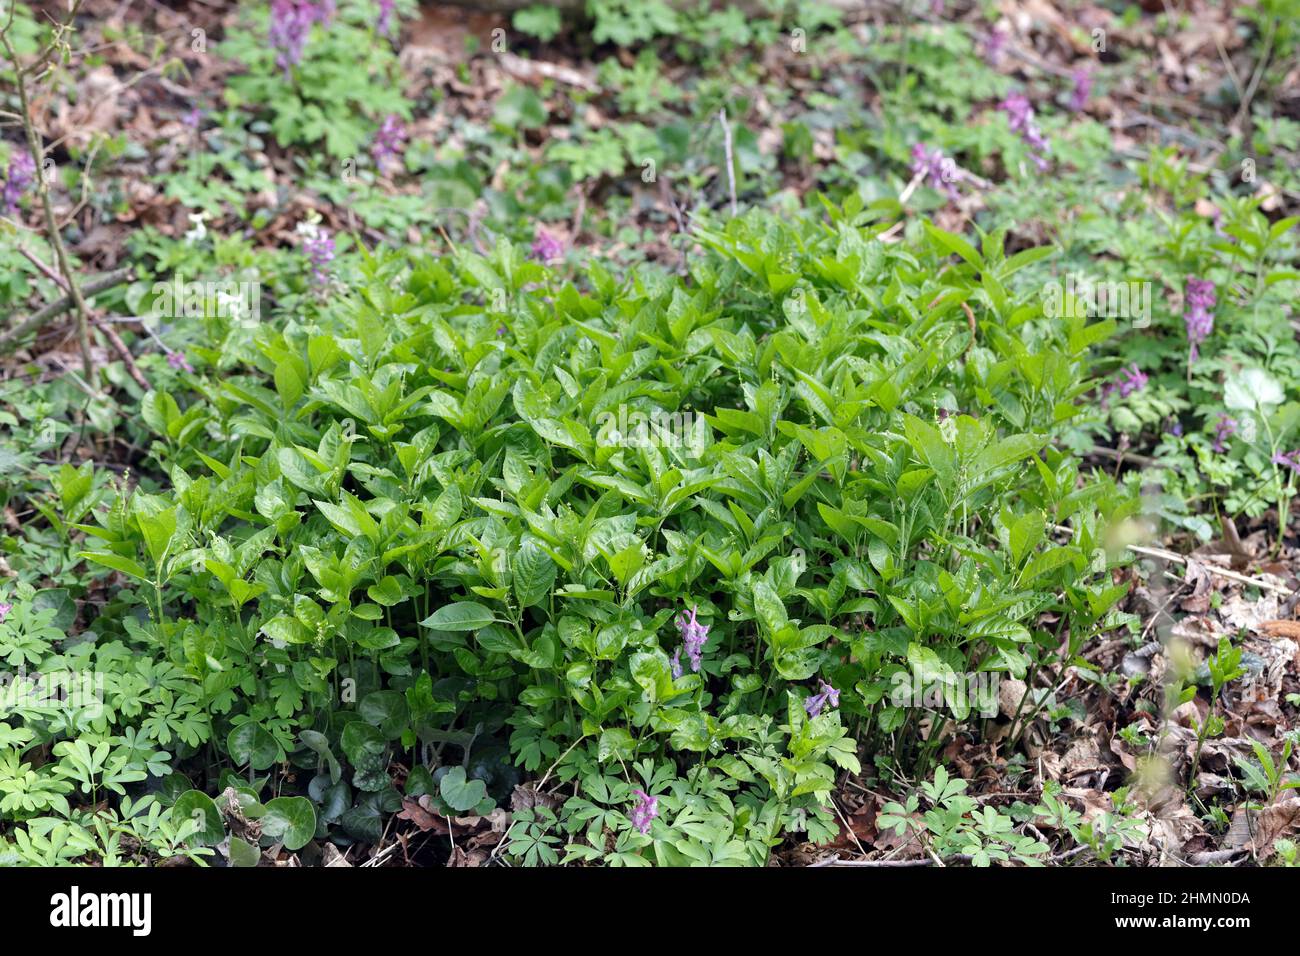 Mercurialis perennis, allgemein bekannt als Quecksilber des Hundes, ist eine giftige Waldpflanze. Stockfoto